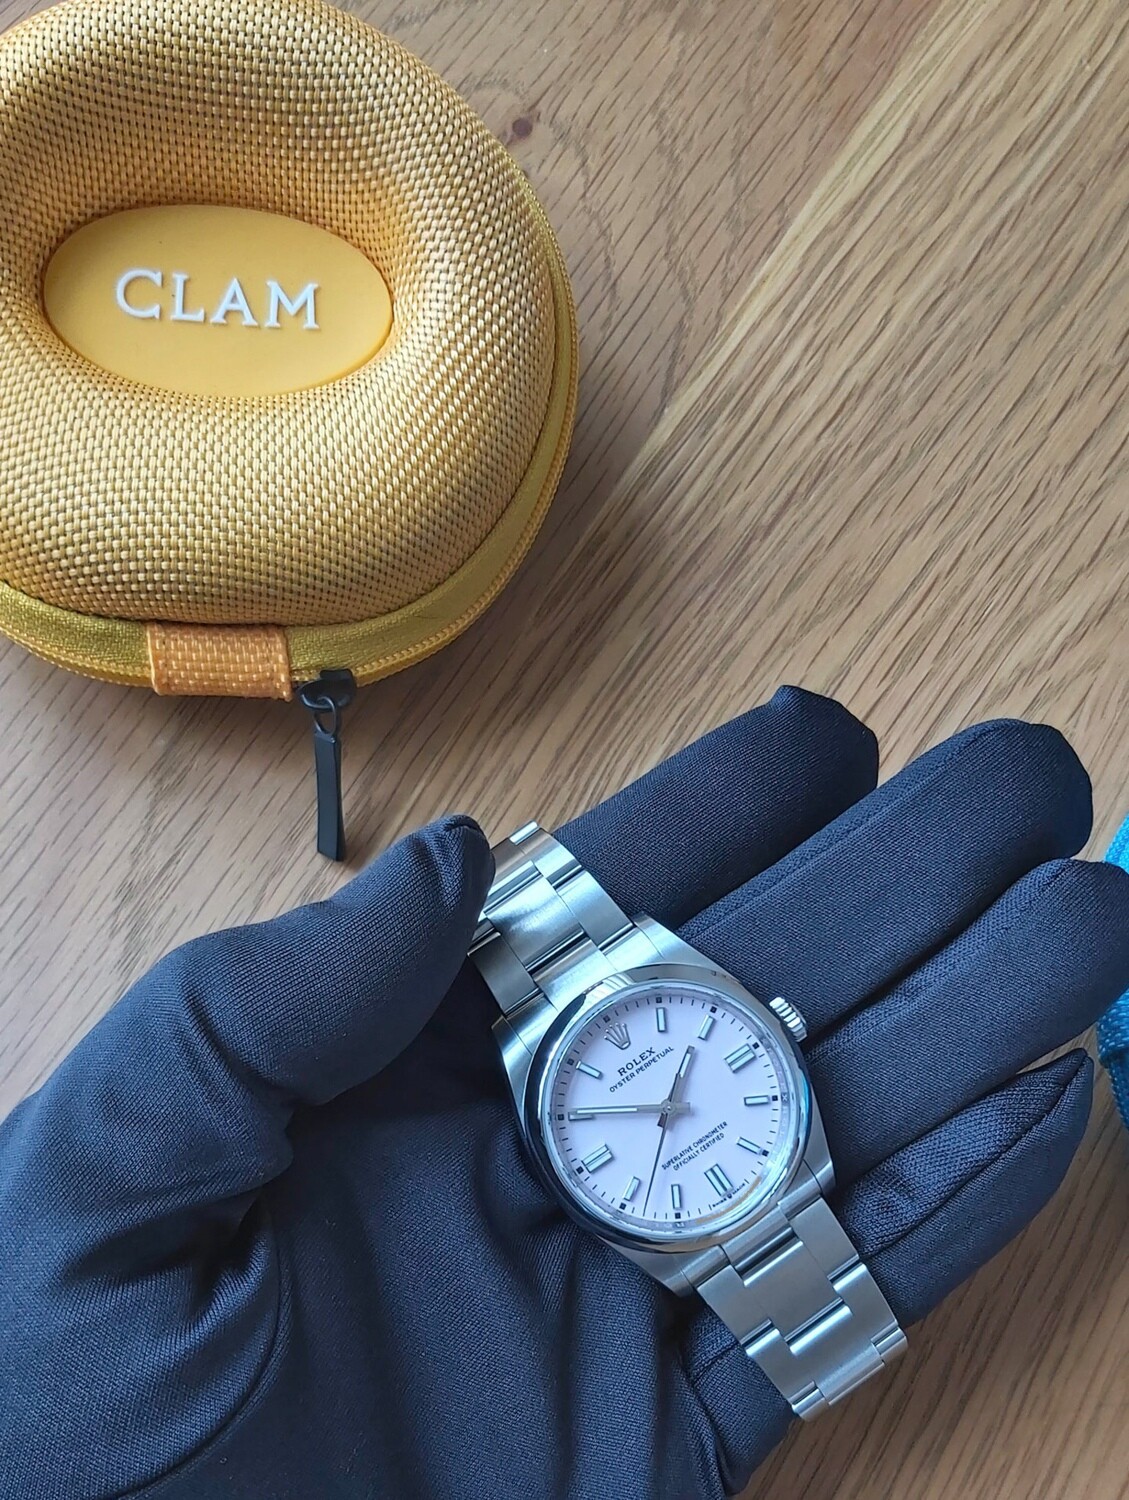 Clam Case - Viper Yellow